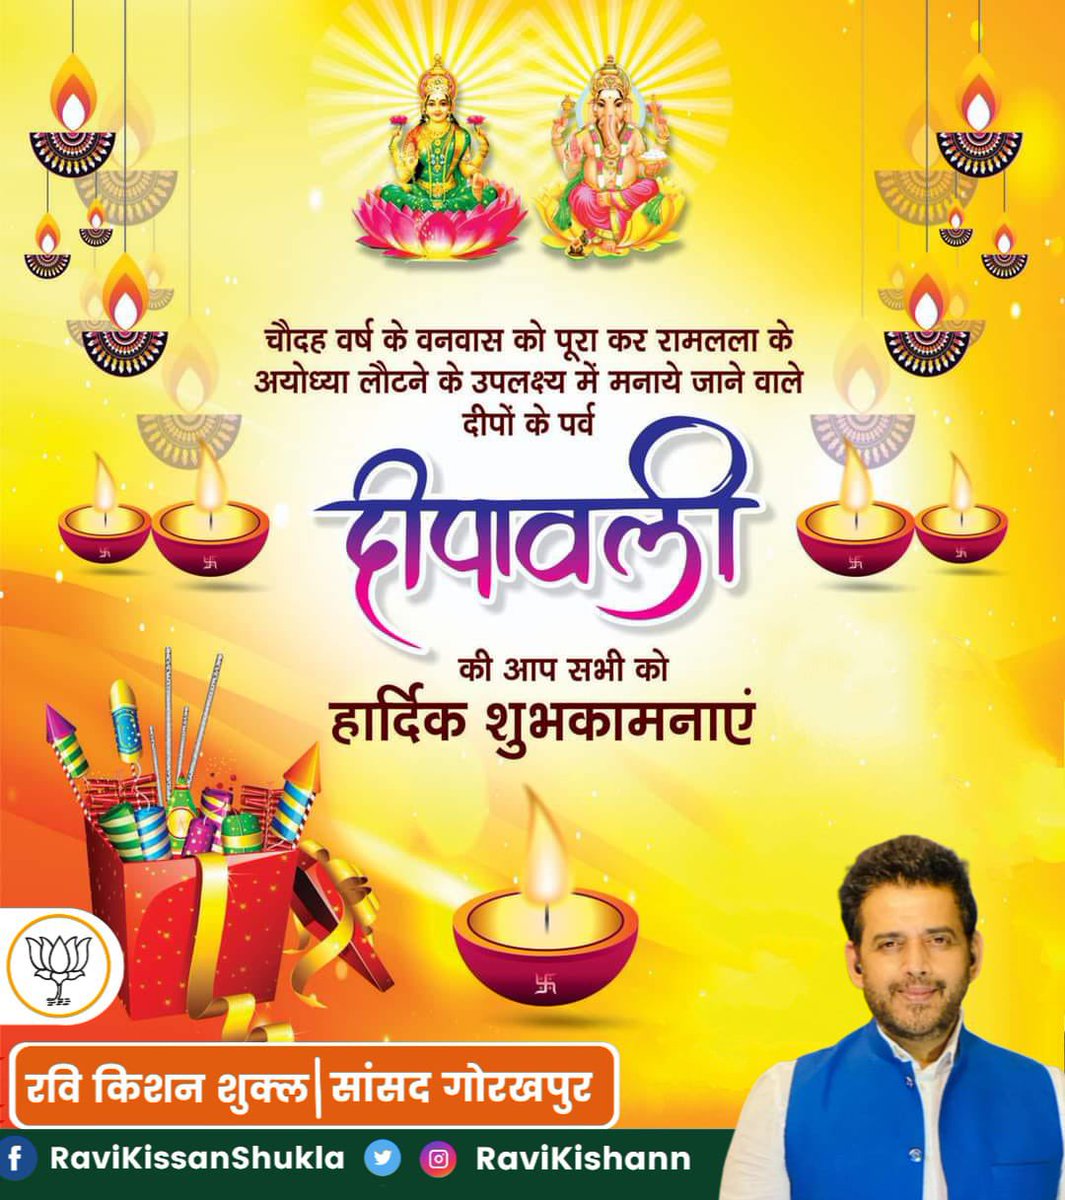 सुख, शांति तथा समृद्धि की मंगलमय कामनाओं के साथ आपको एवं आपके परिवार को प्रकाश के इस महा उत्सव #दीपावली की हार्दिक बधाई और शुभकामनाएं। मां लक्ष्मी जी की असीम कृपा आप पर सदैव बनी रहे !! #दीपावली #HappyDiwali2022 #Diwali